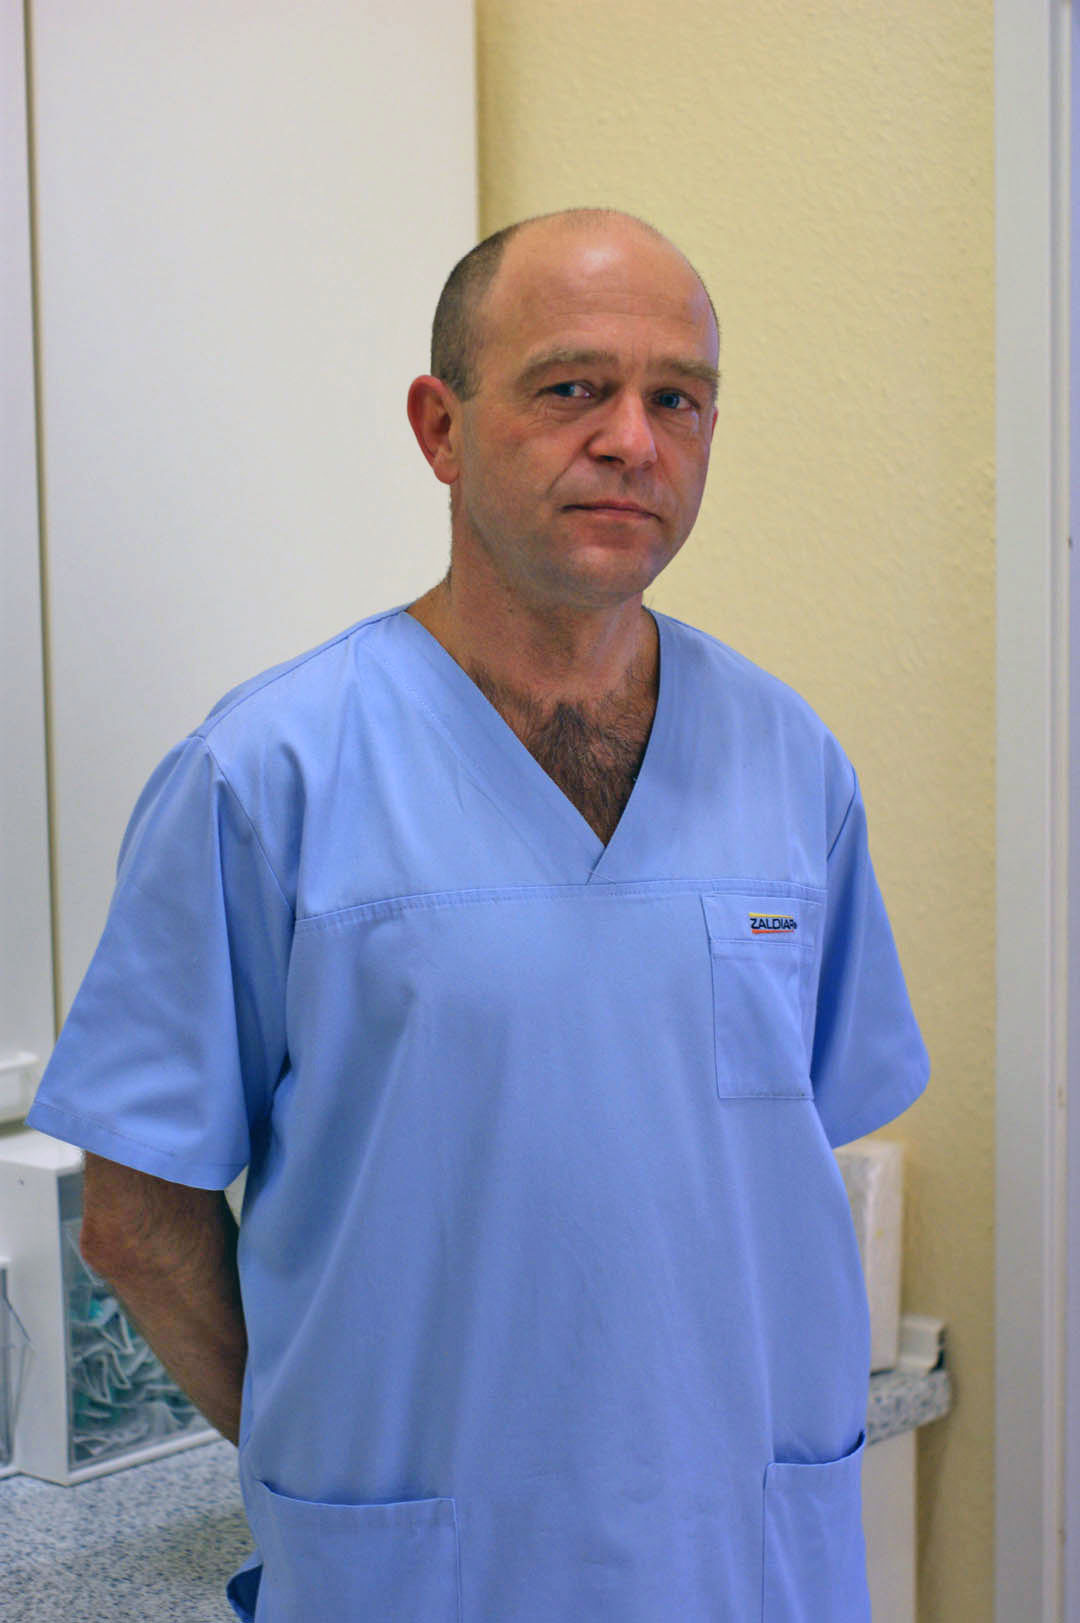 Dariusz Pierzchalski, Arzt, Facharzt, Chirurge, Mediziner